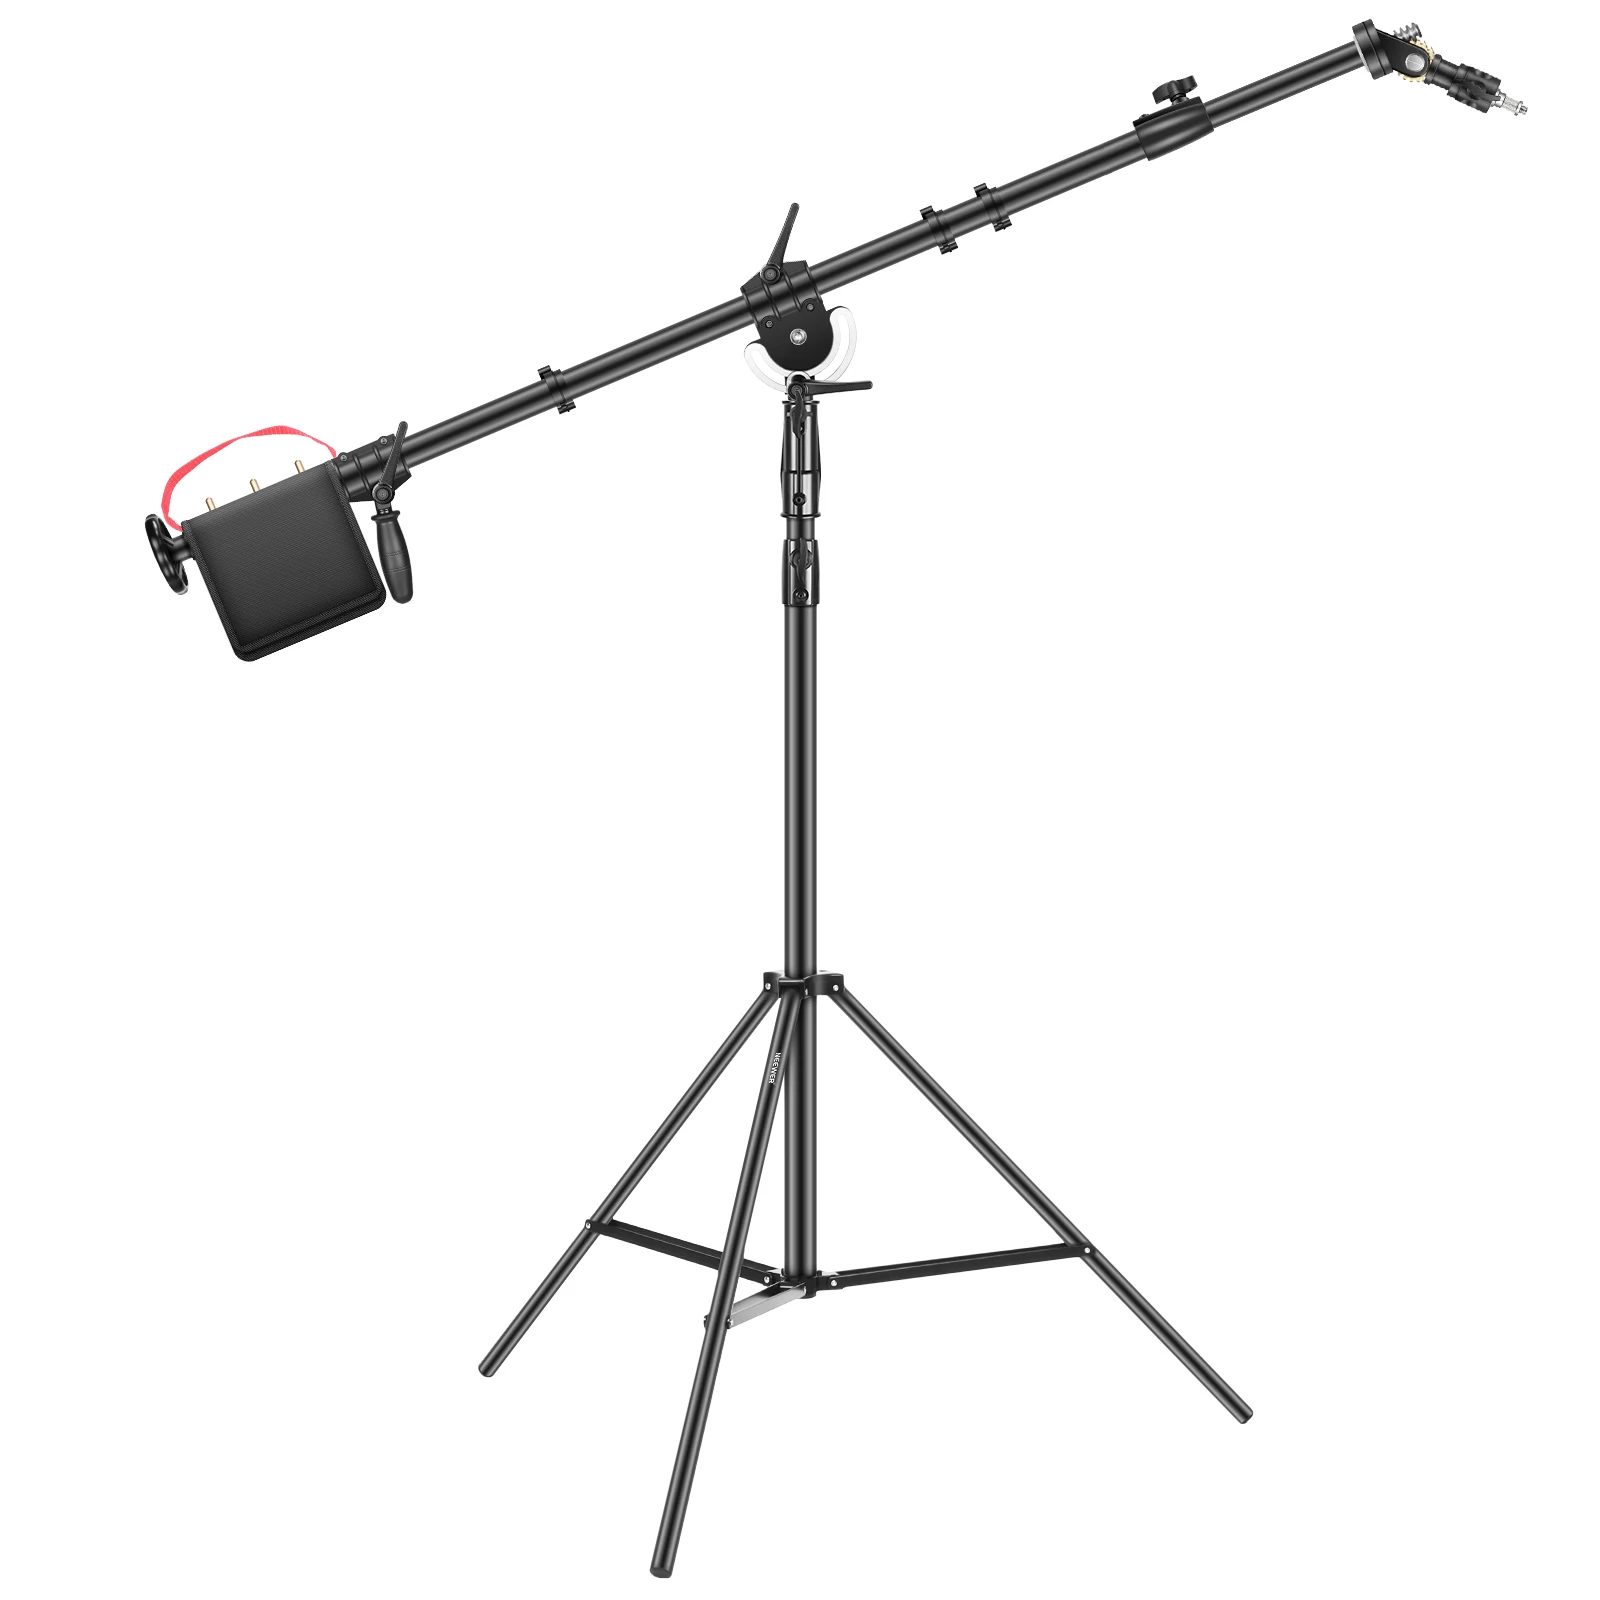 

Осветительная стойка Neewer для фотосъемки с профессиональной стрелой, штатив 225 см для монофосветильник стробоскопического софтбокса и друг...